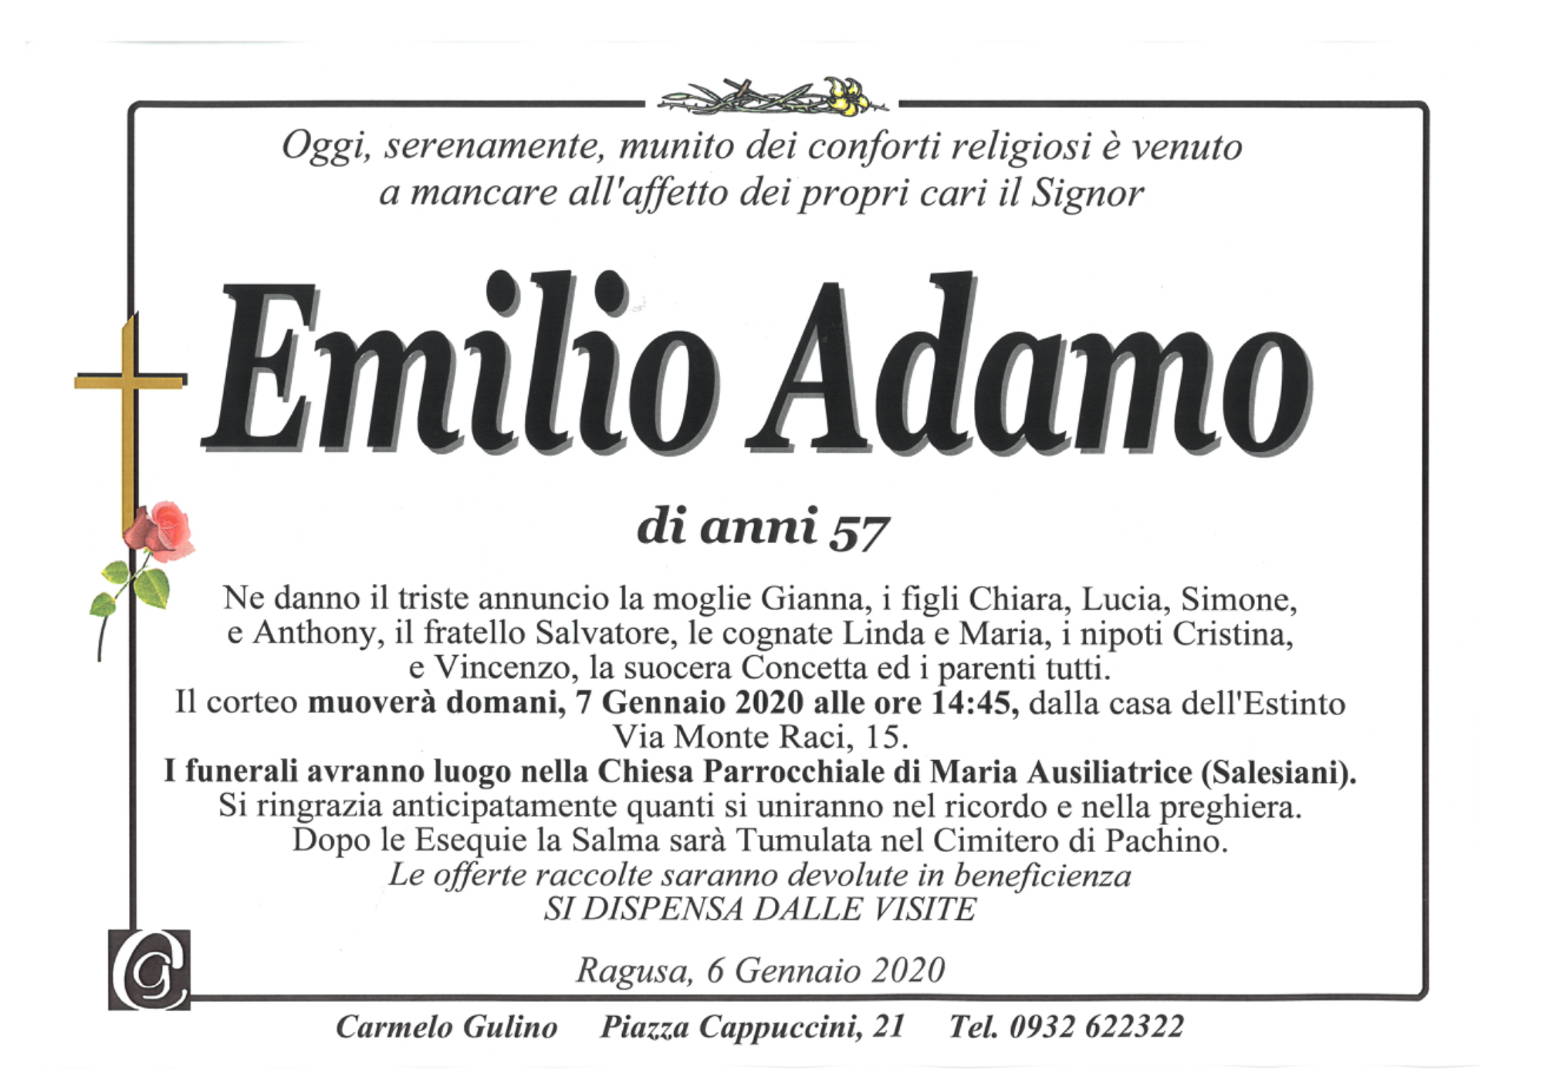 Emilio Adamo